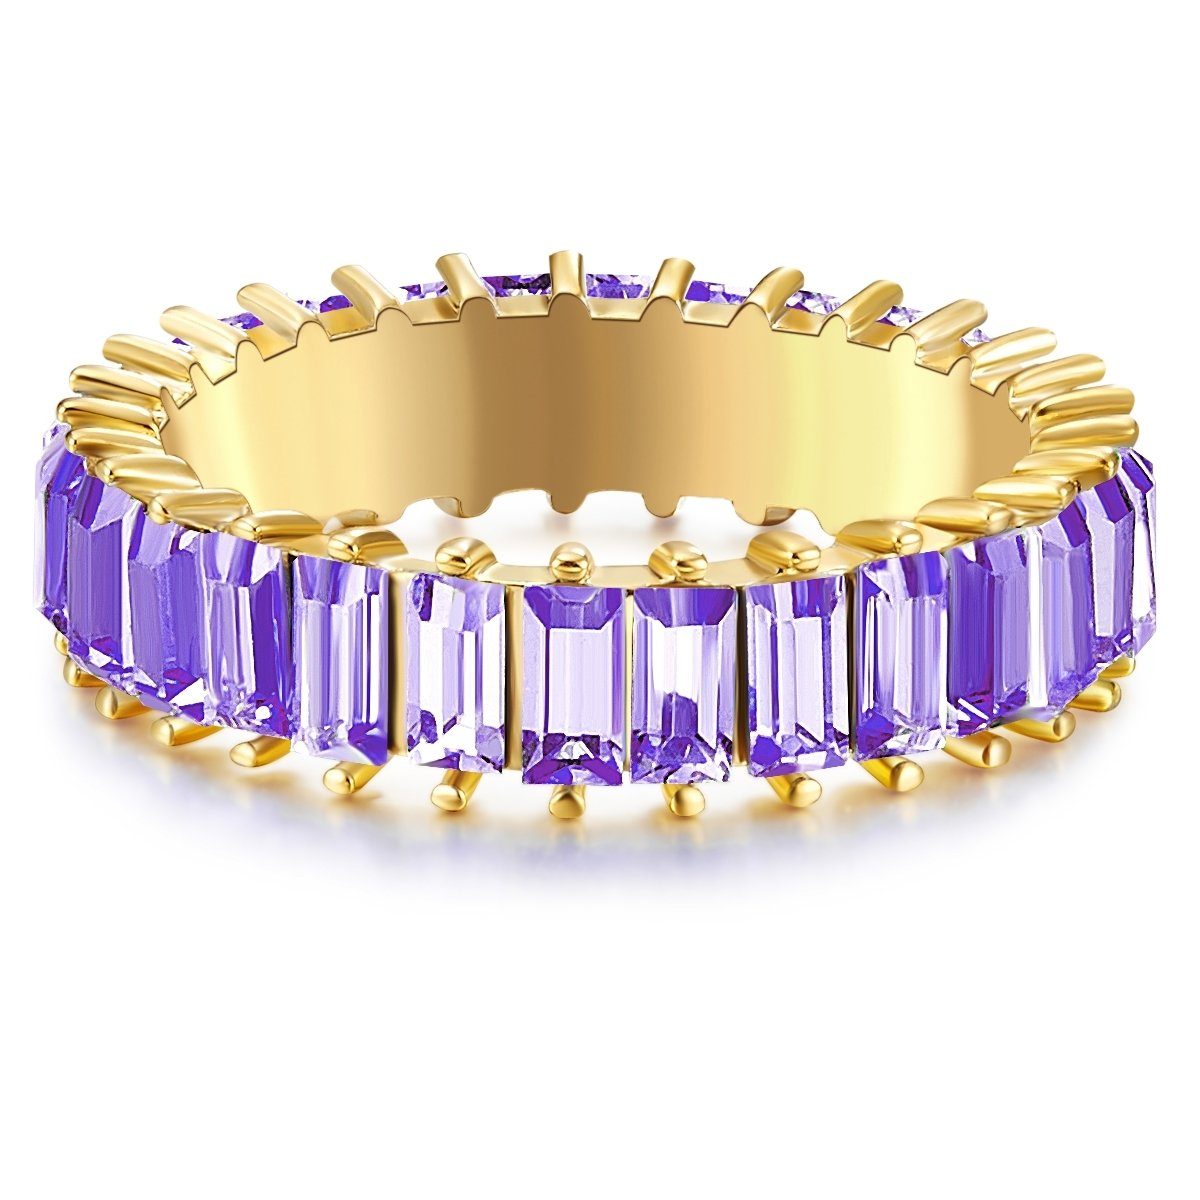 Ring Yokoamii gelbgold, Fingerring violett Kristall gelbgold